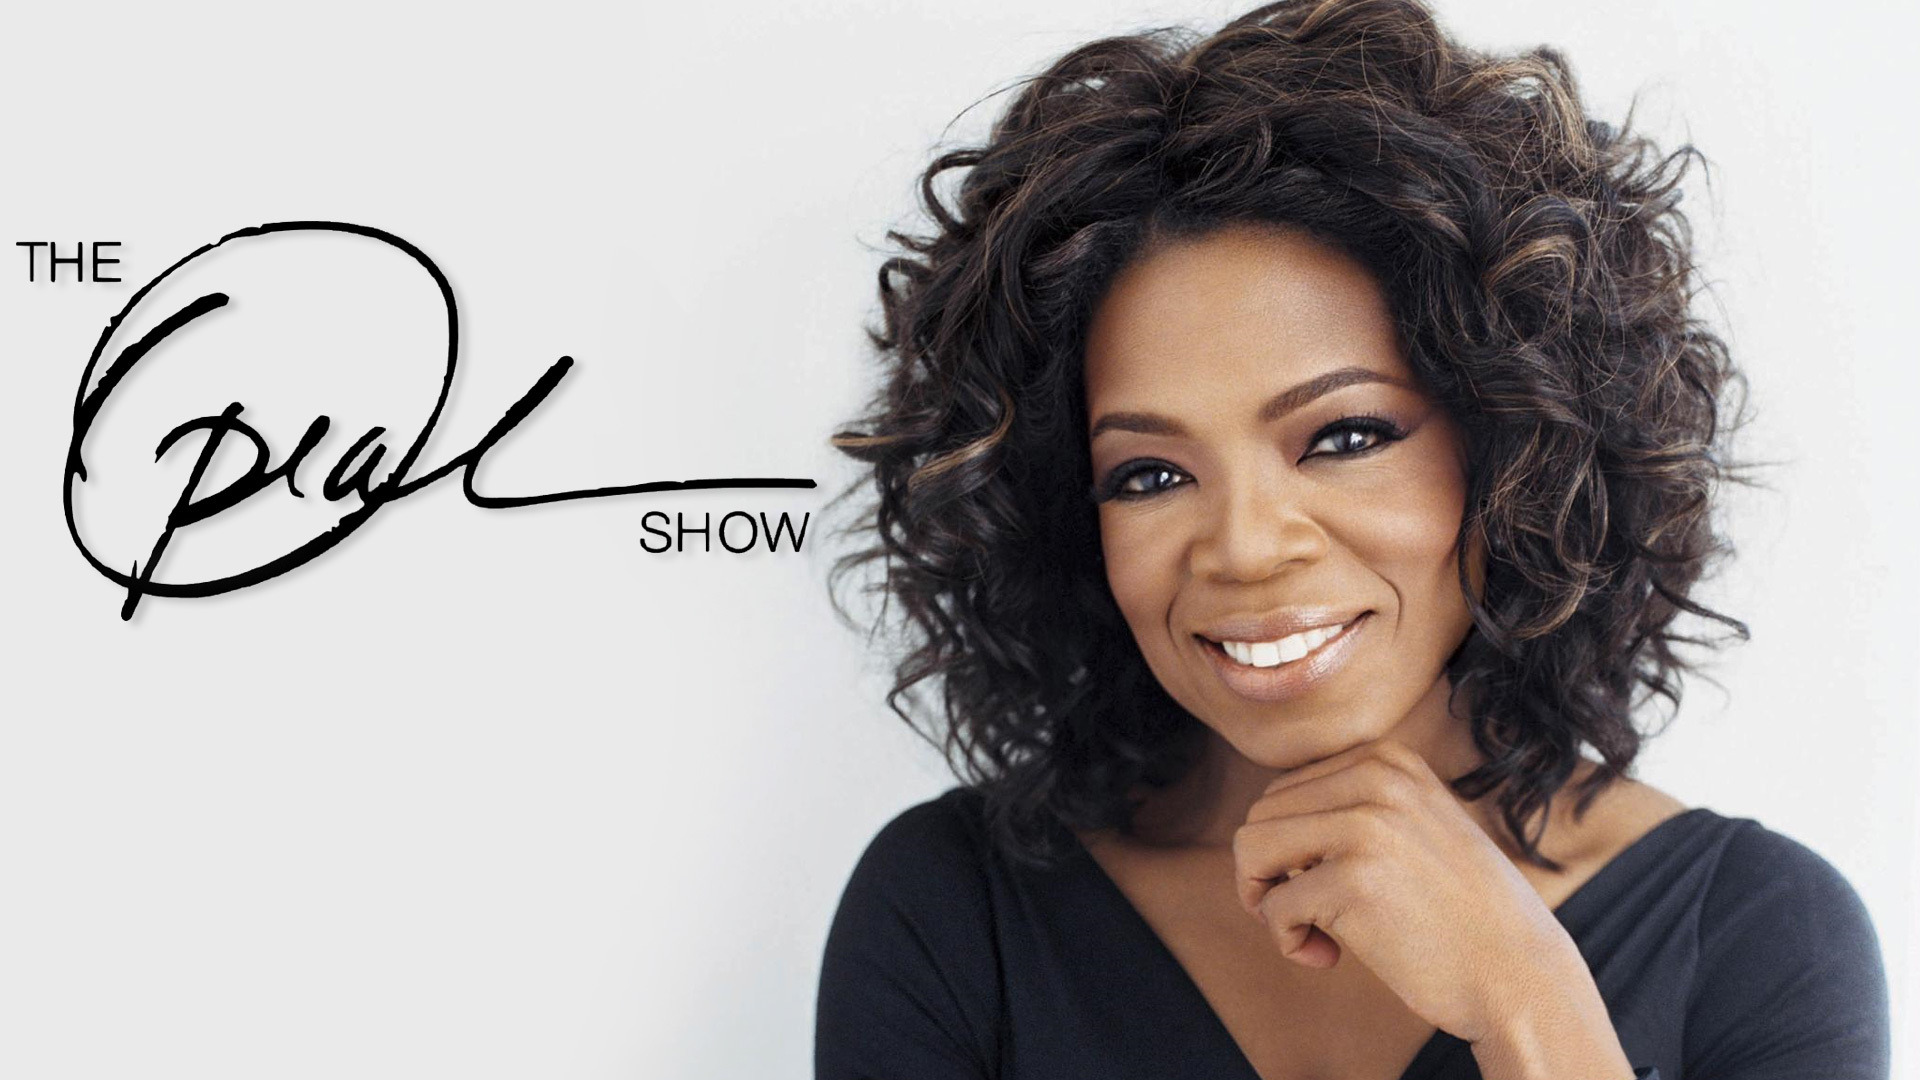 Show The Oprah Winfrey Show